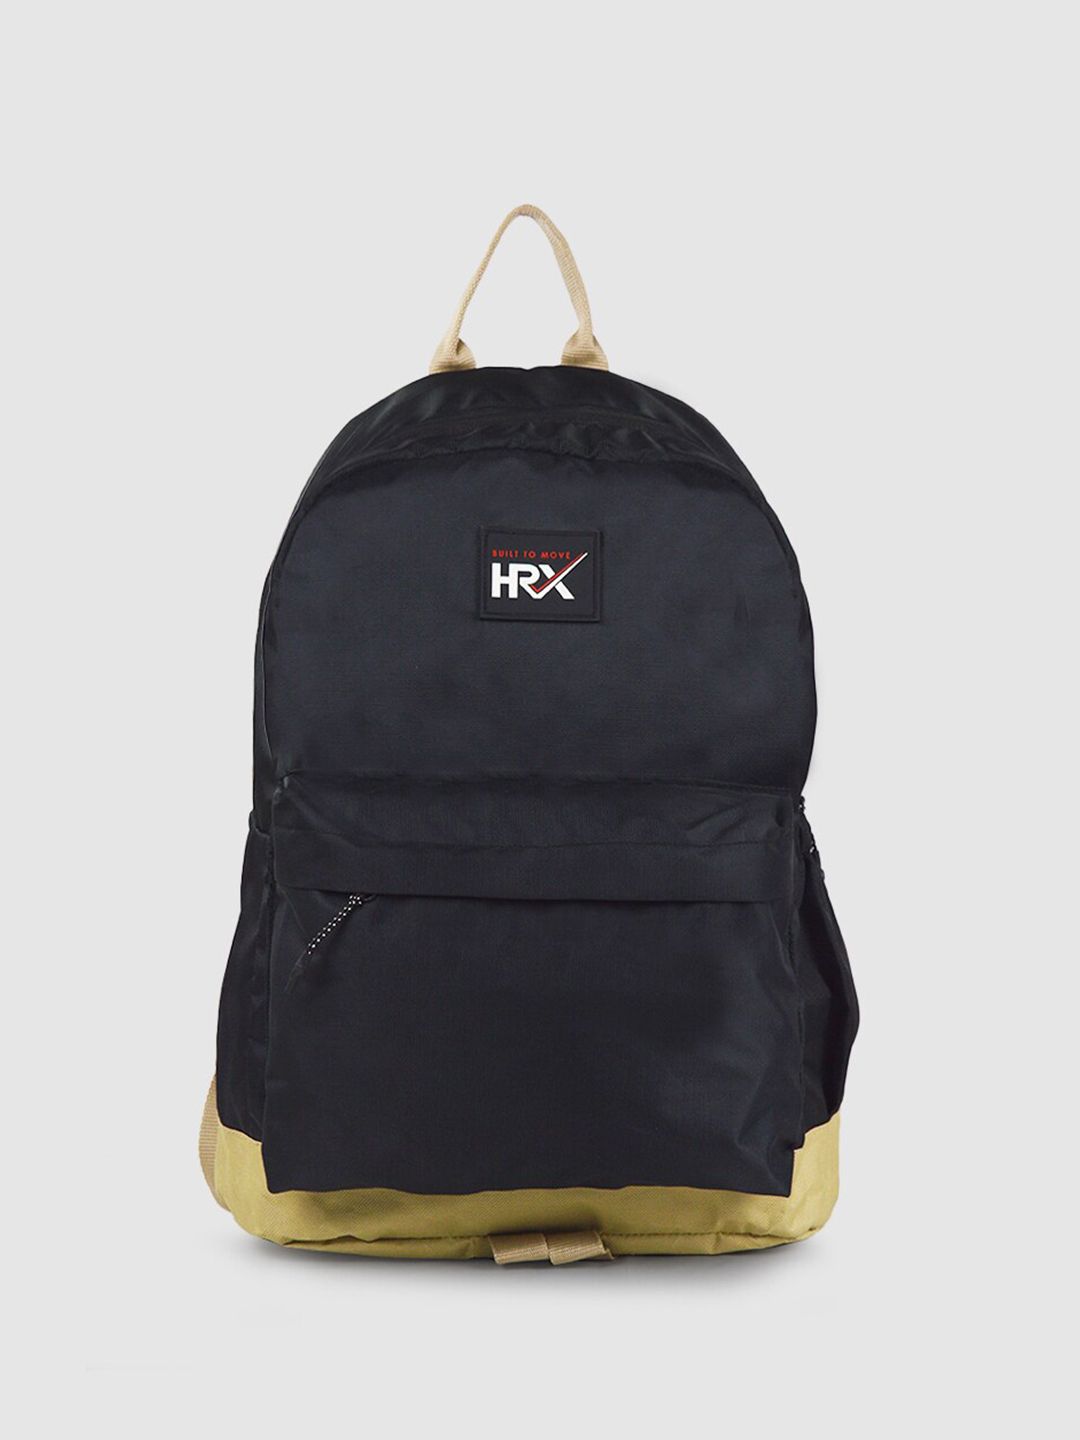 HRX by Hrithik Roshan Unisex Black Medium Backpack